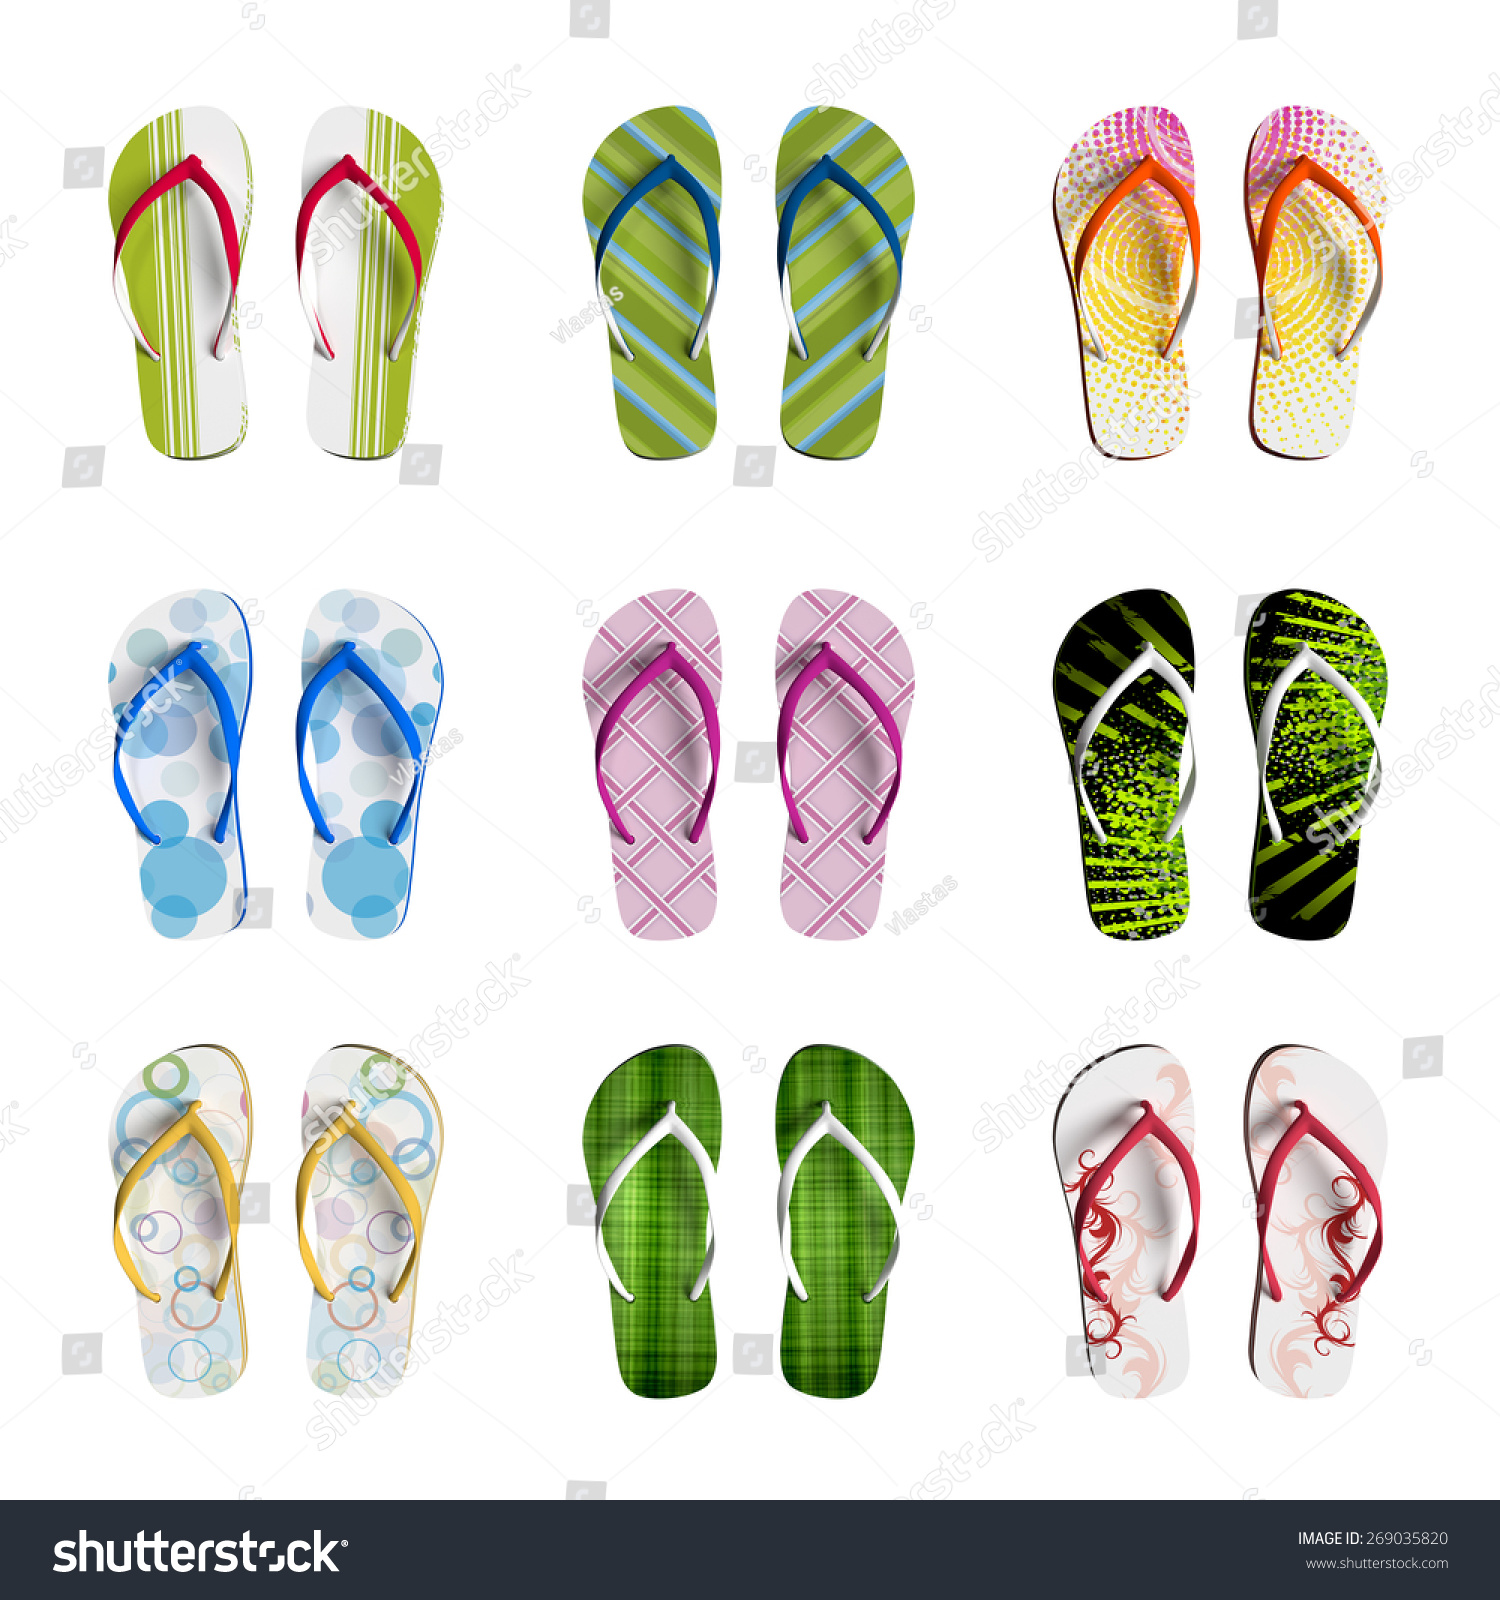 Flip Flops Isolated On White Stock Illustration 269035820 - Shutterstock